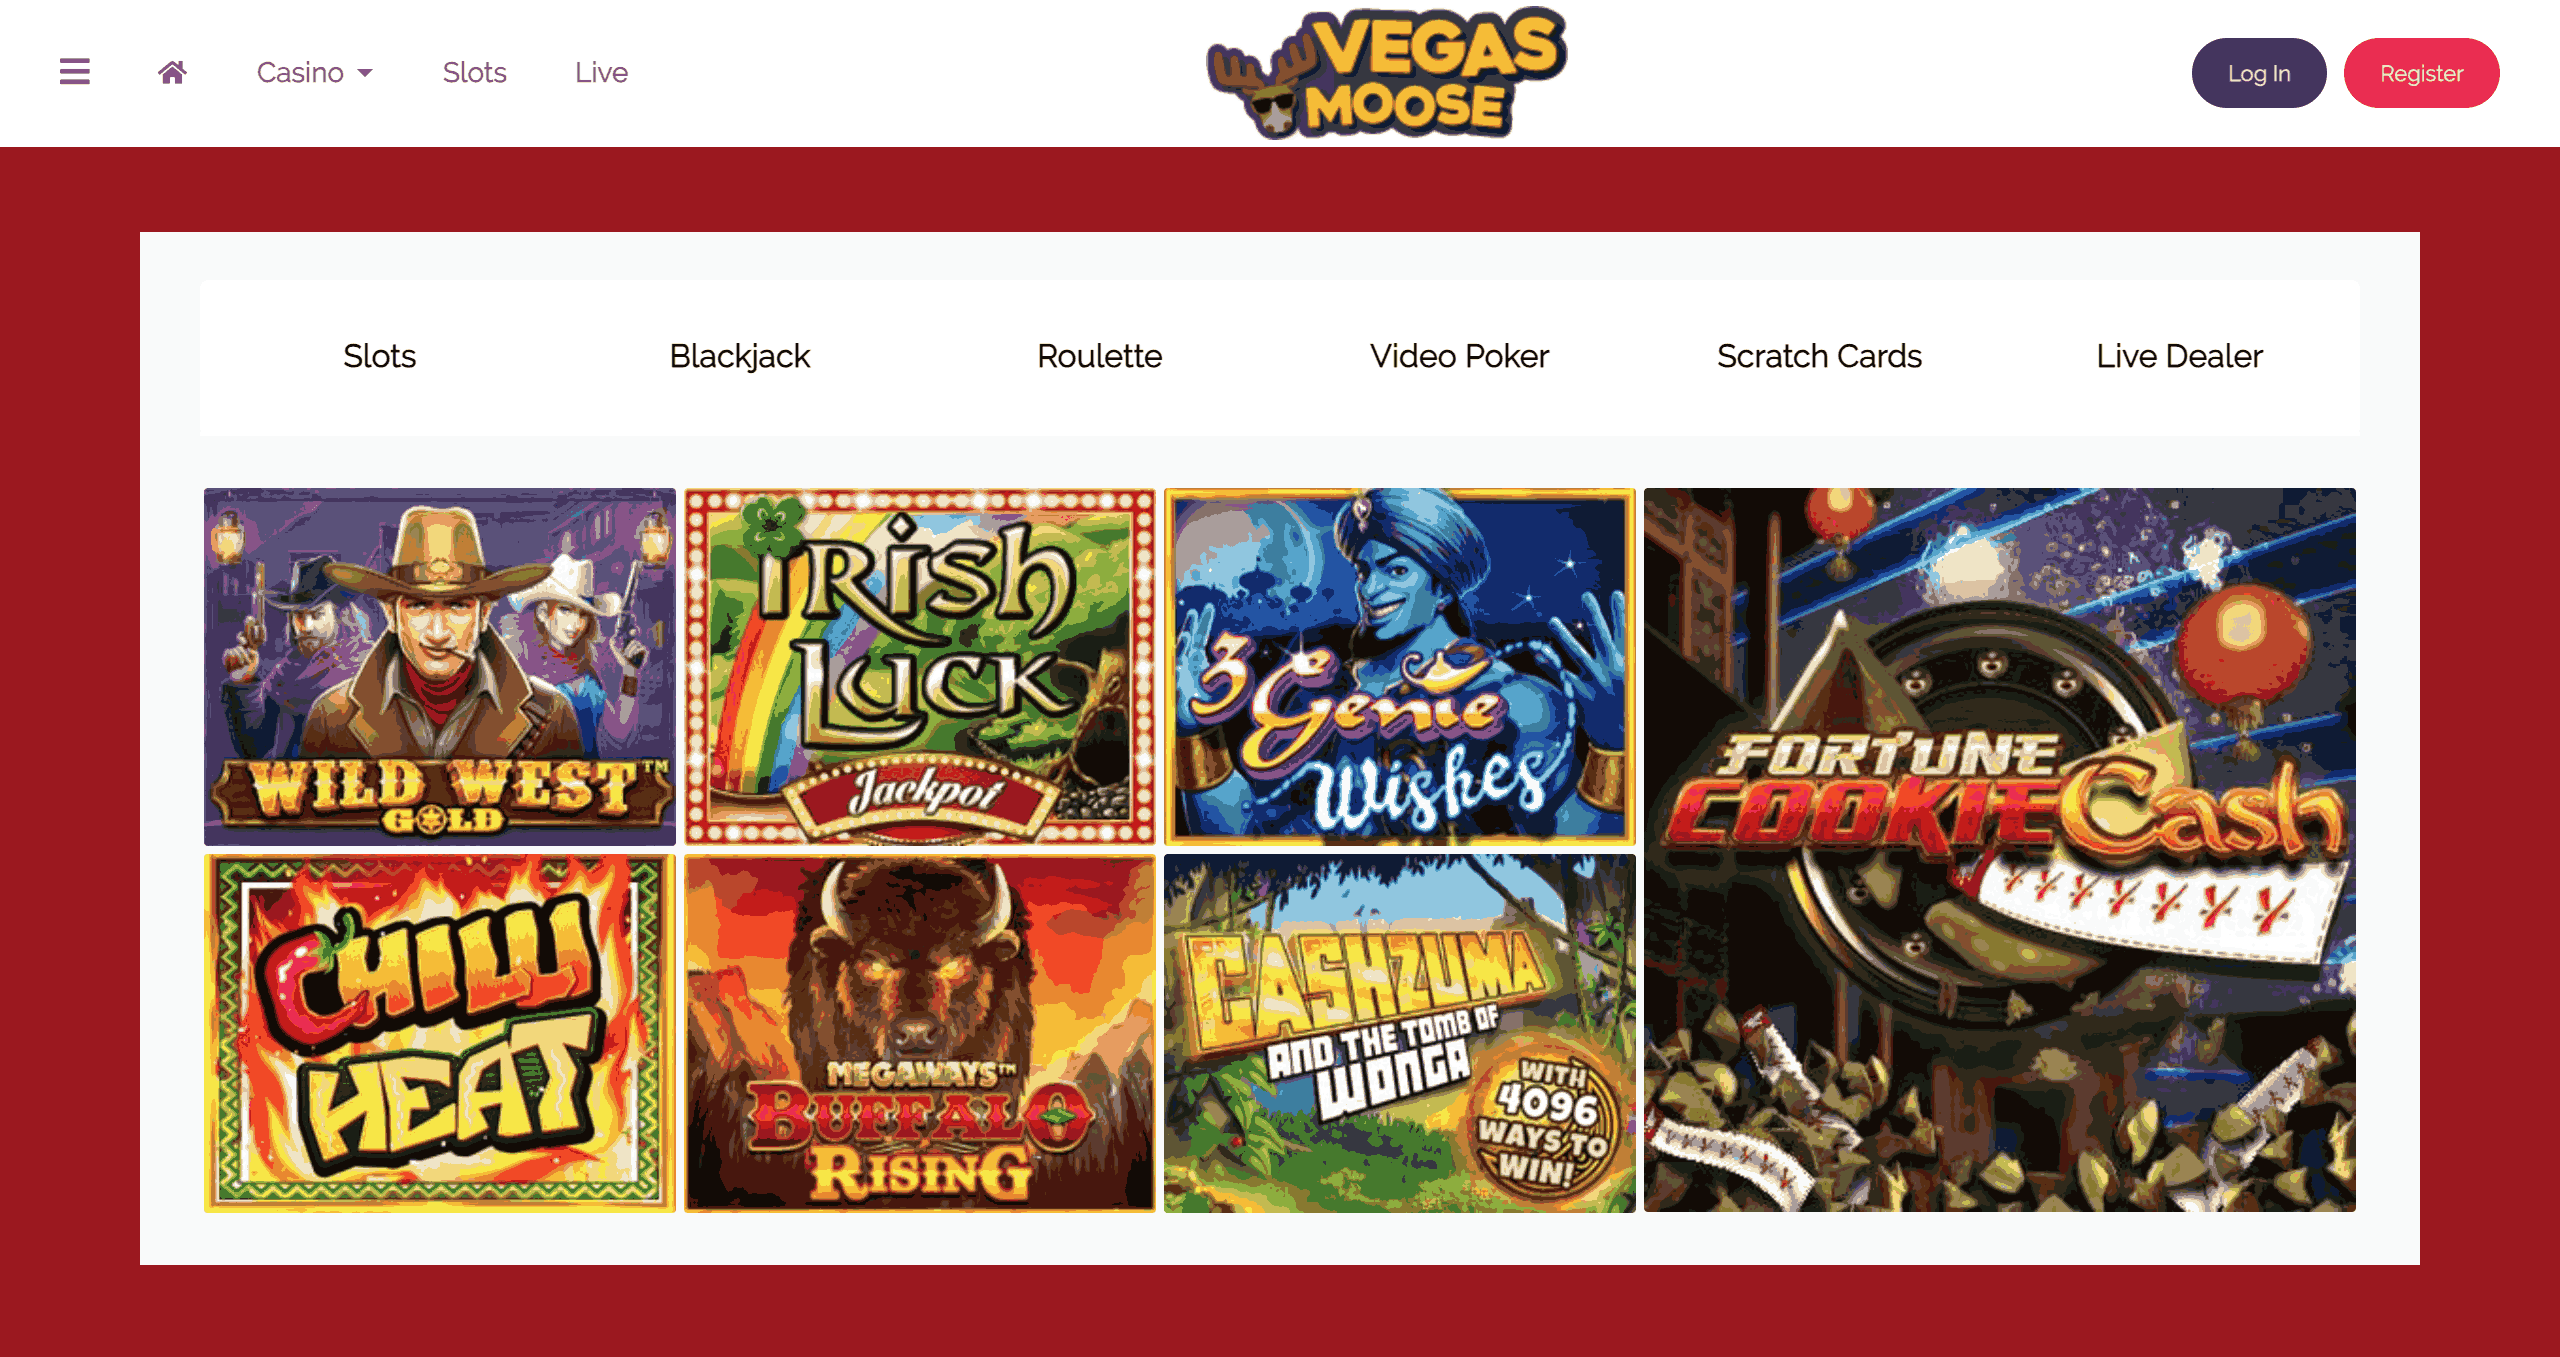 Vegas Moose Casino Site - 2